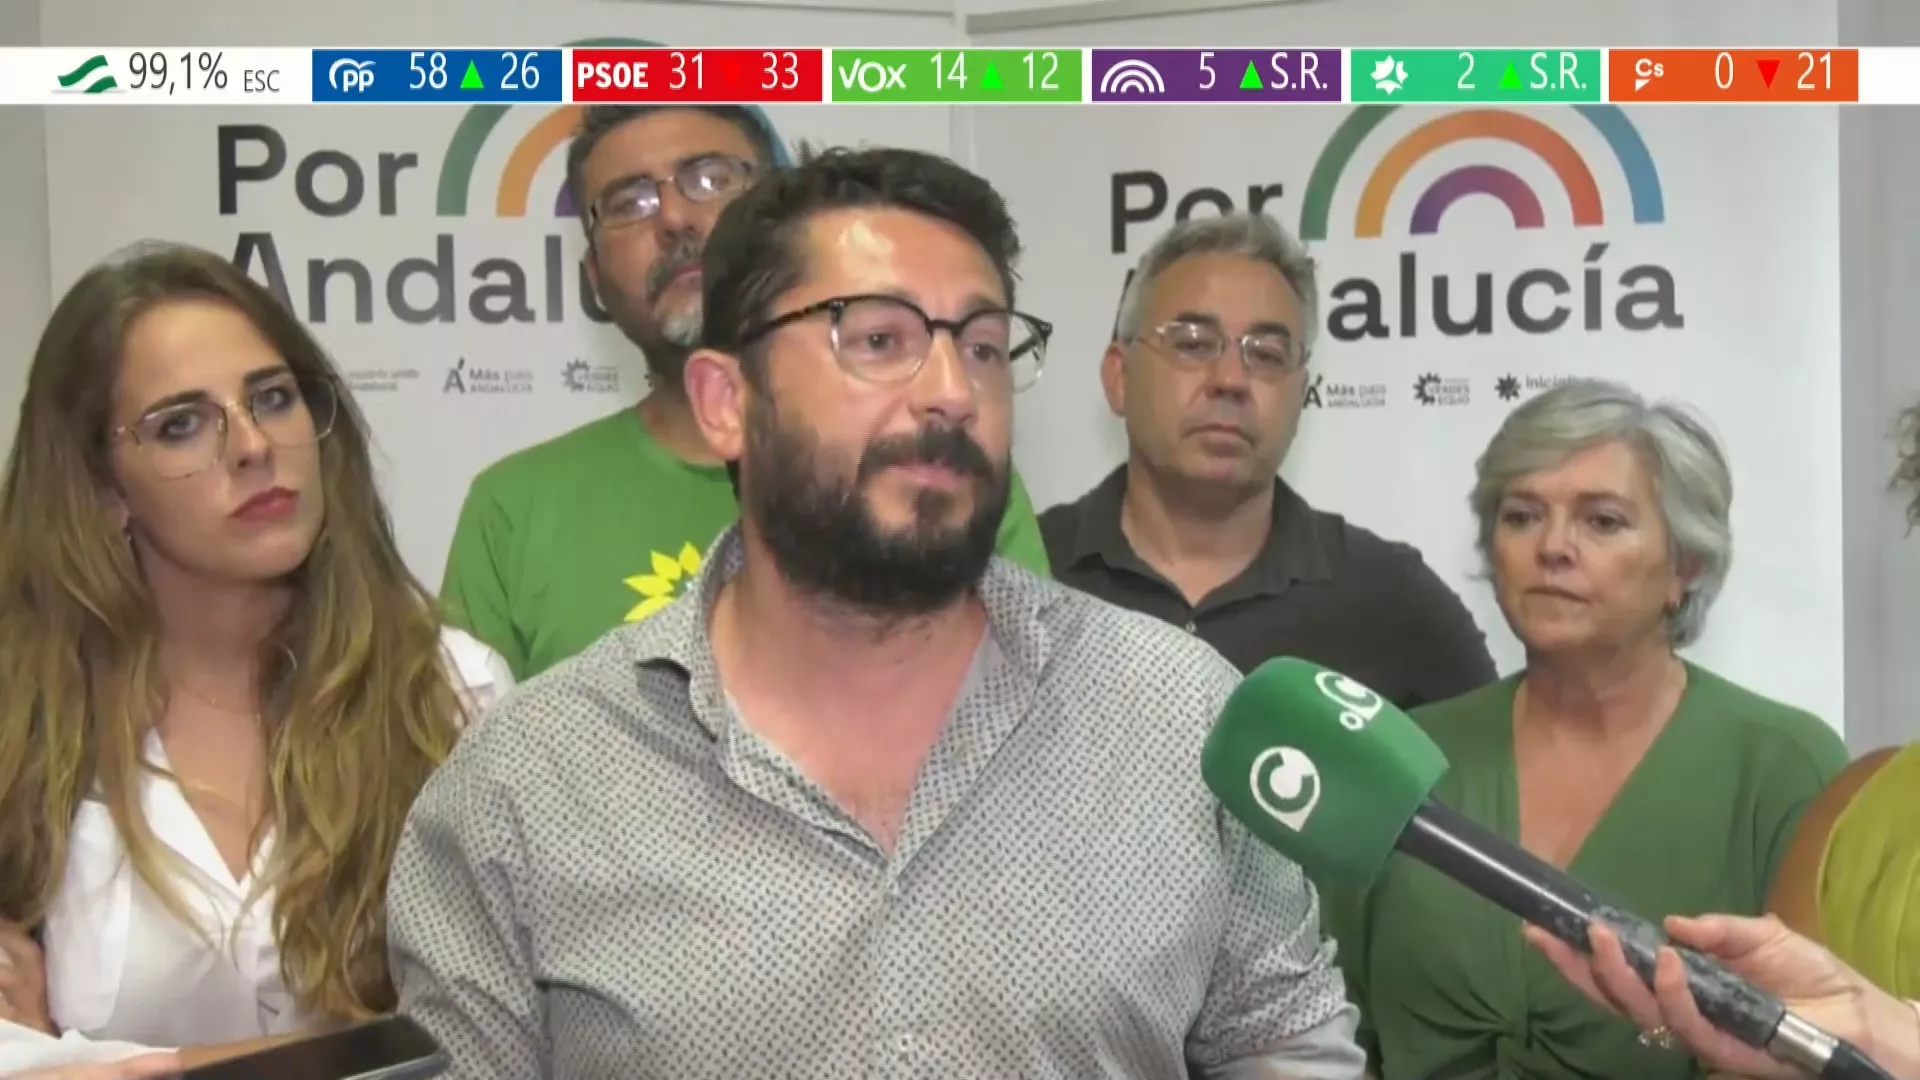 Por Andalucía lamenta los malos resultados de la izquierda y considera que el PP ha logrado desmovilizar al electorado andaluz